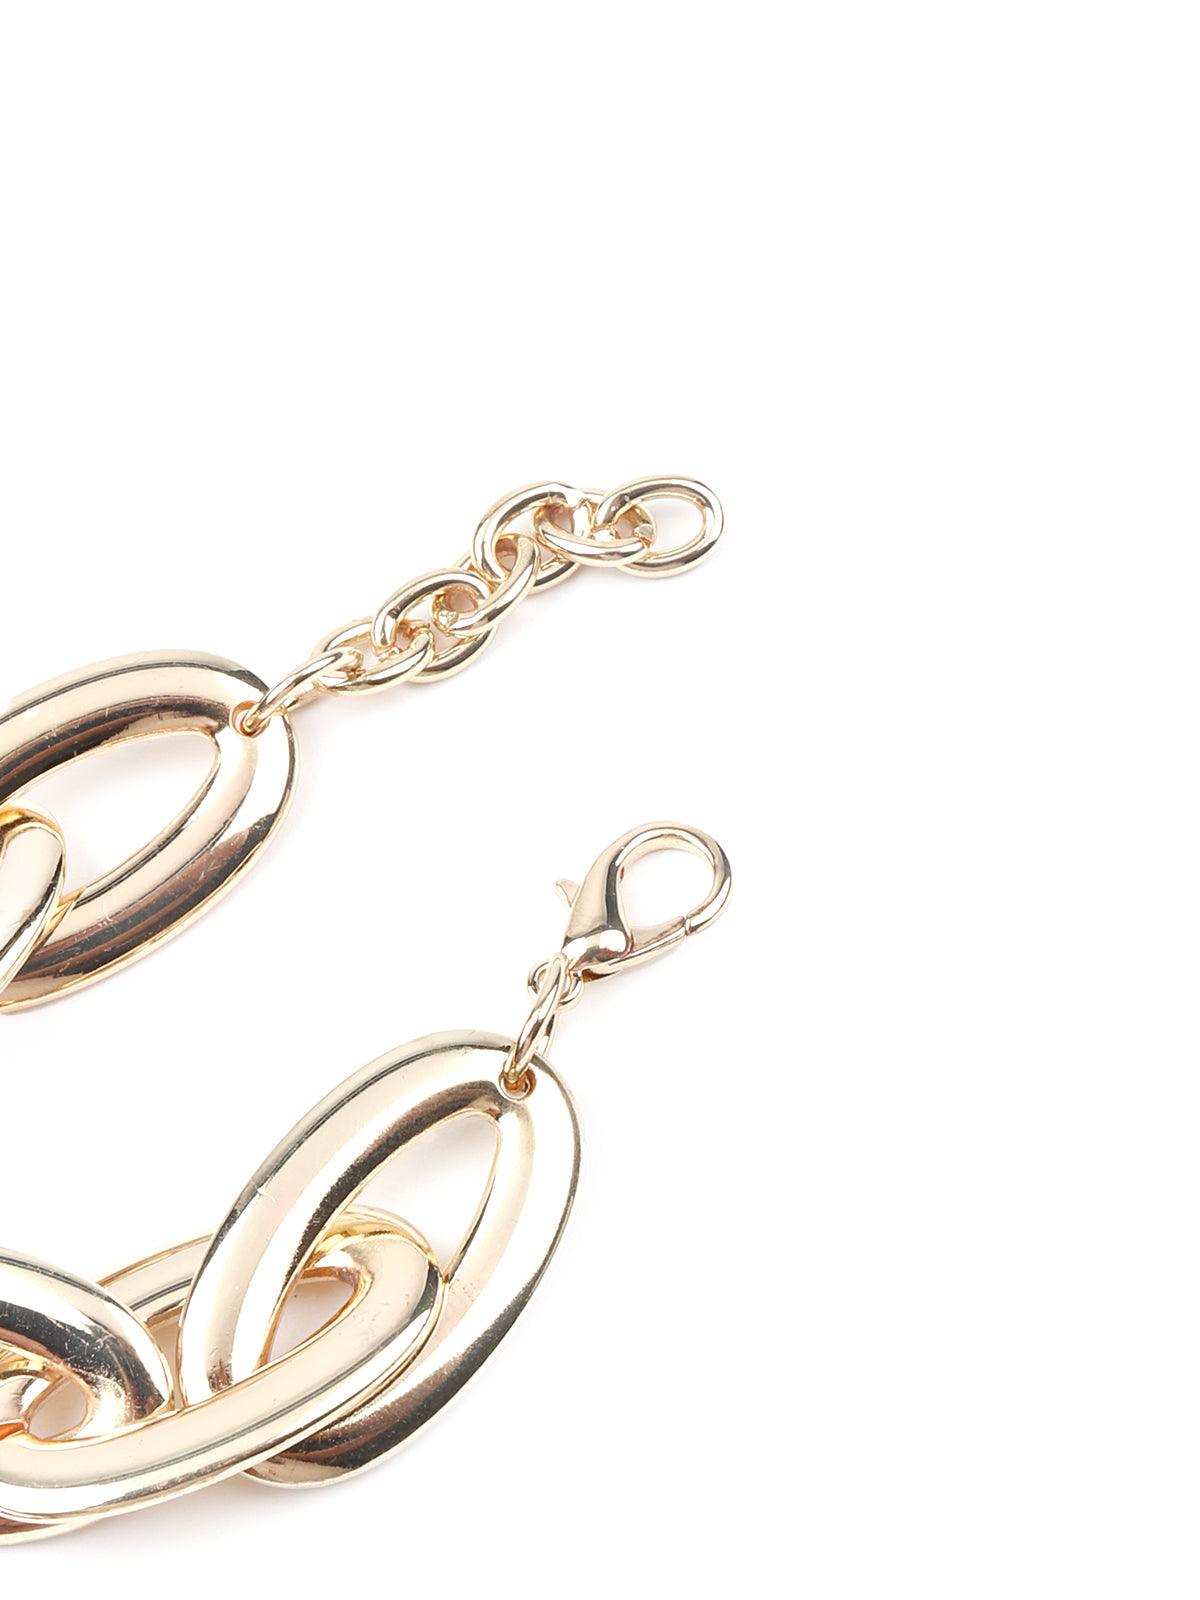 Women's Light Gold Chain Linked Bracelet - Odette